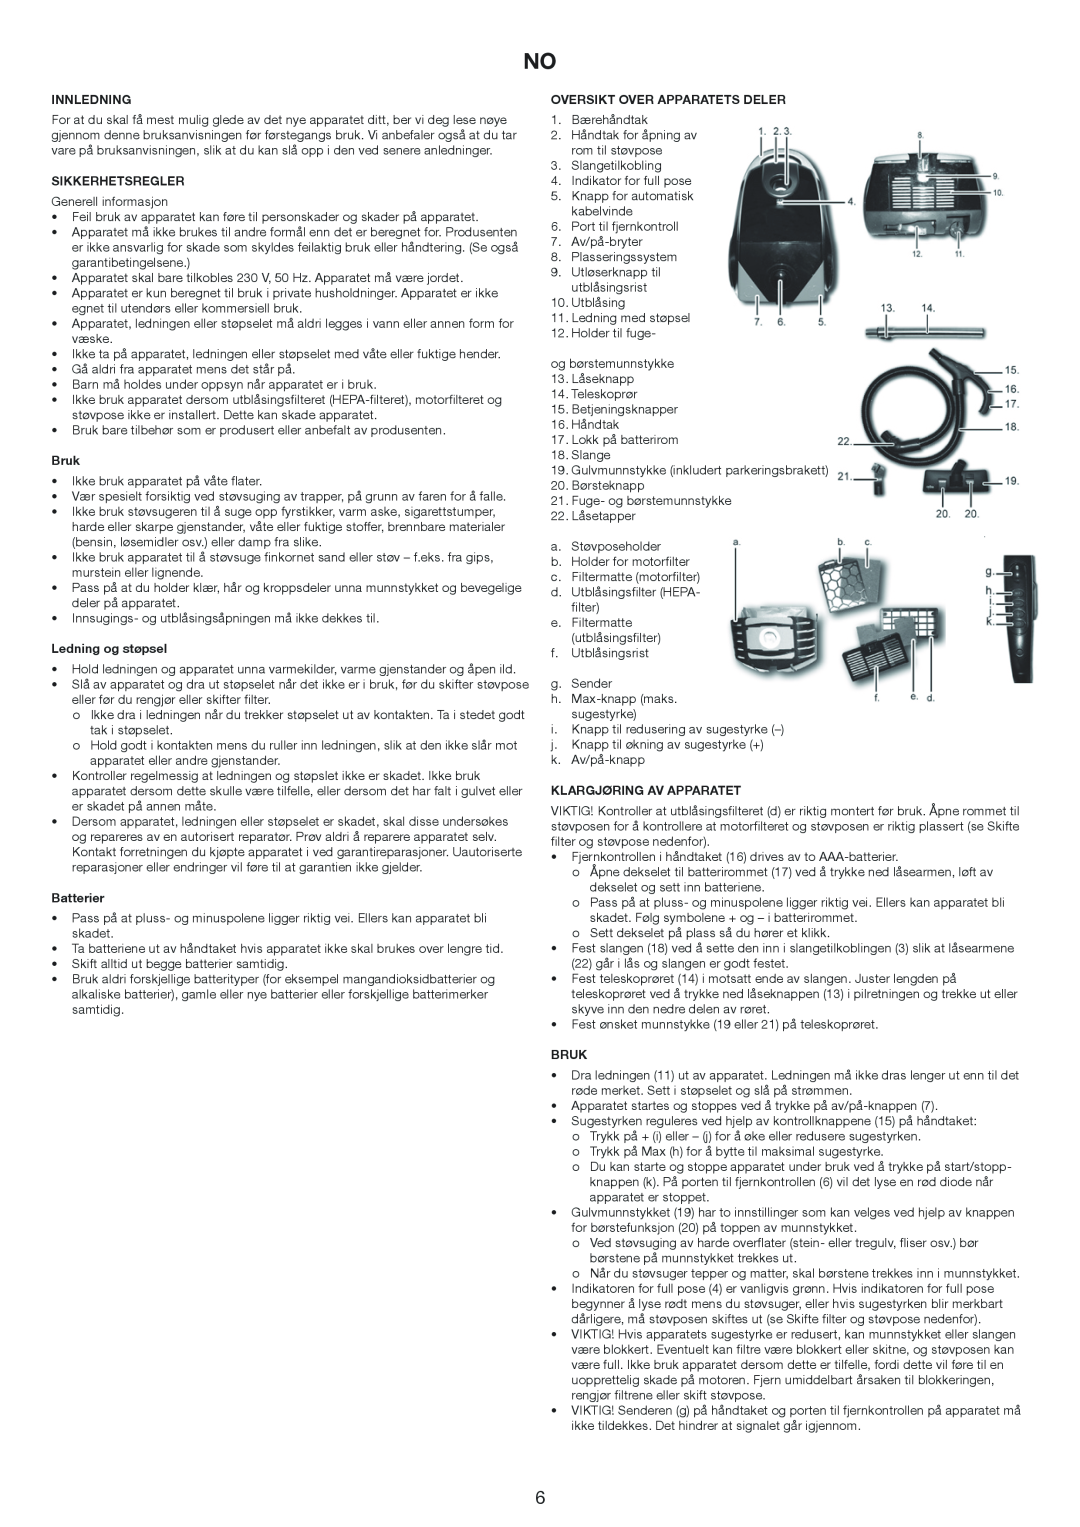 Melissa 640-174 manual Innledning, Sikkerhetsregler, Bruk, Ledning og støpsel, Batterier, Oversikt Over Apparatets Deler 